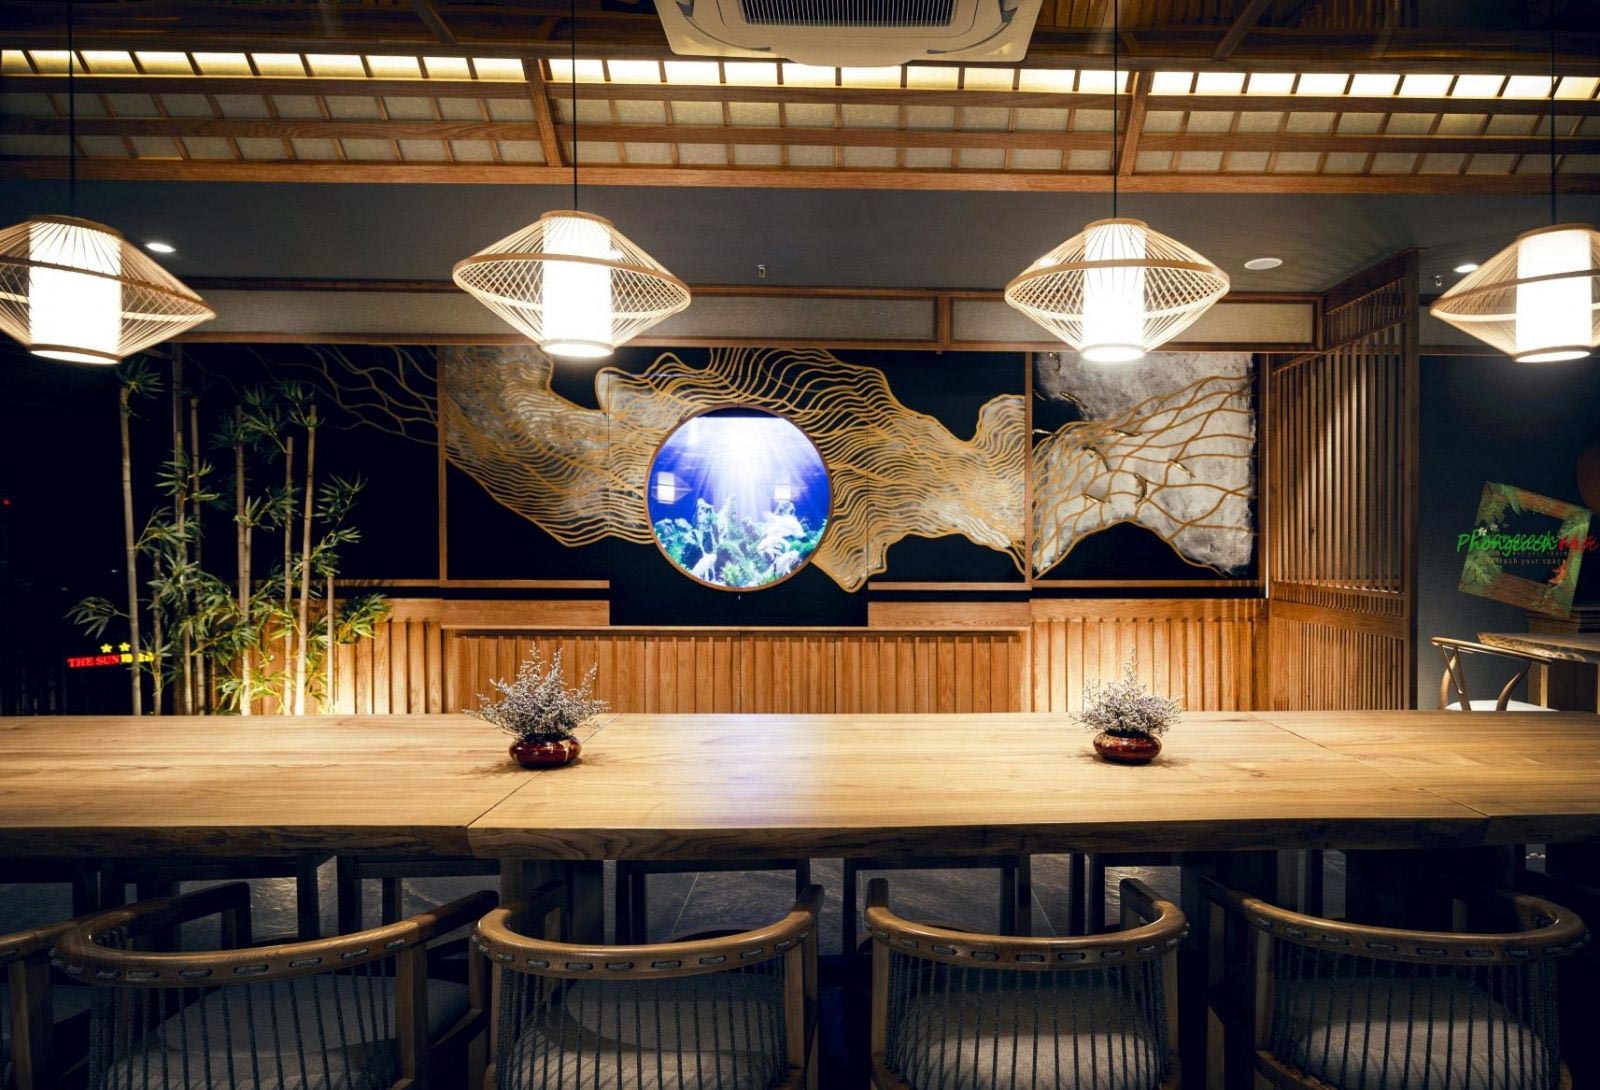 Trang trí nội thất nhà hàng Sushi World bằng bể cá KOI